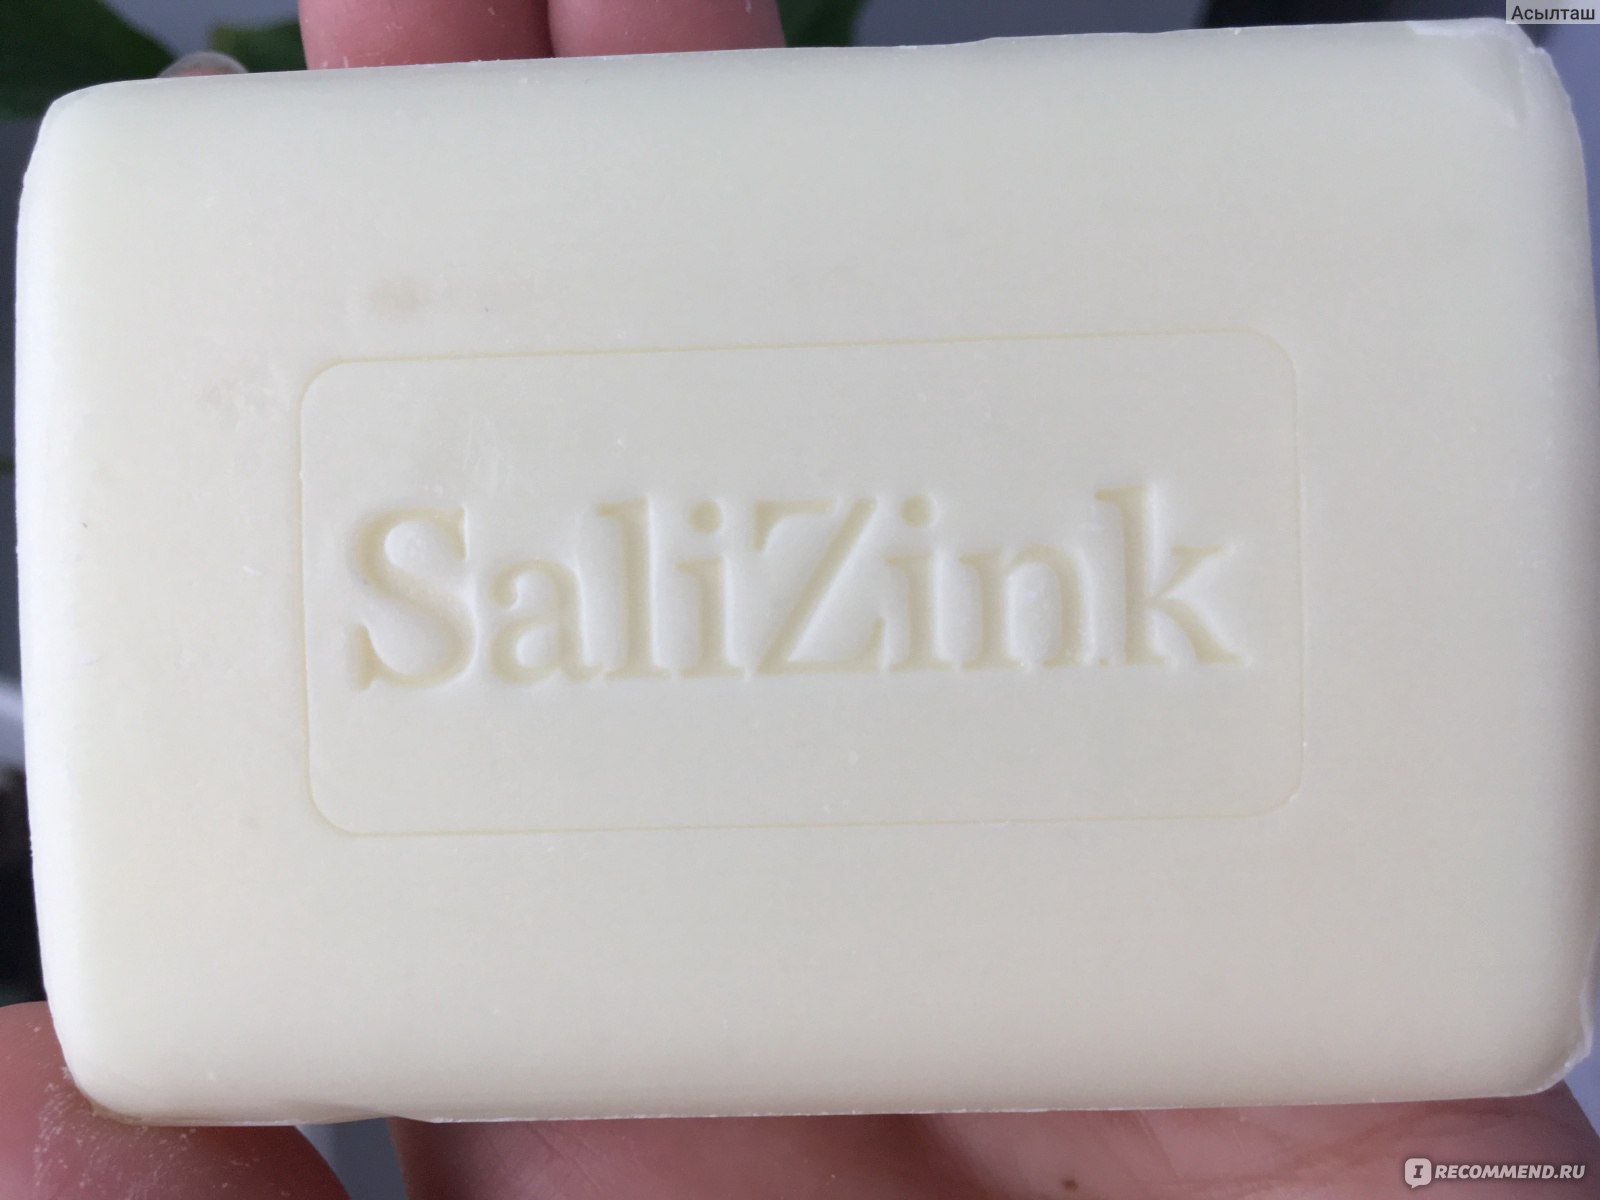 Мыло Salizink с серой